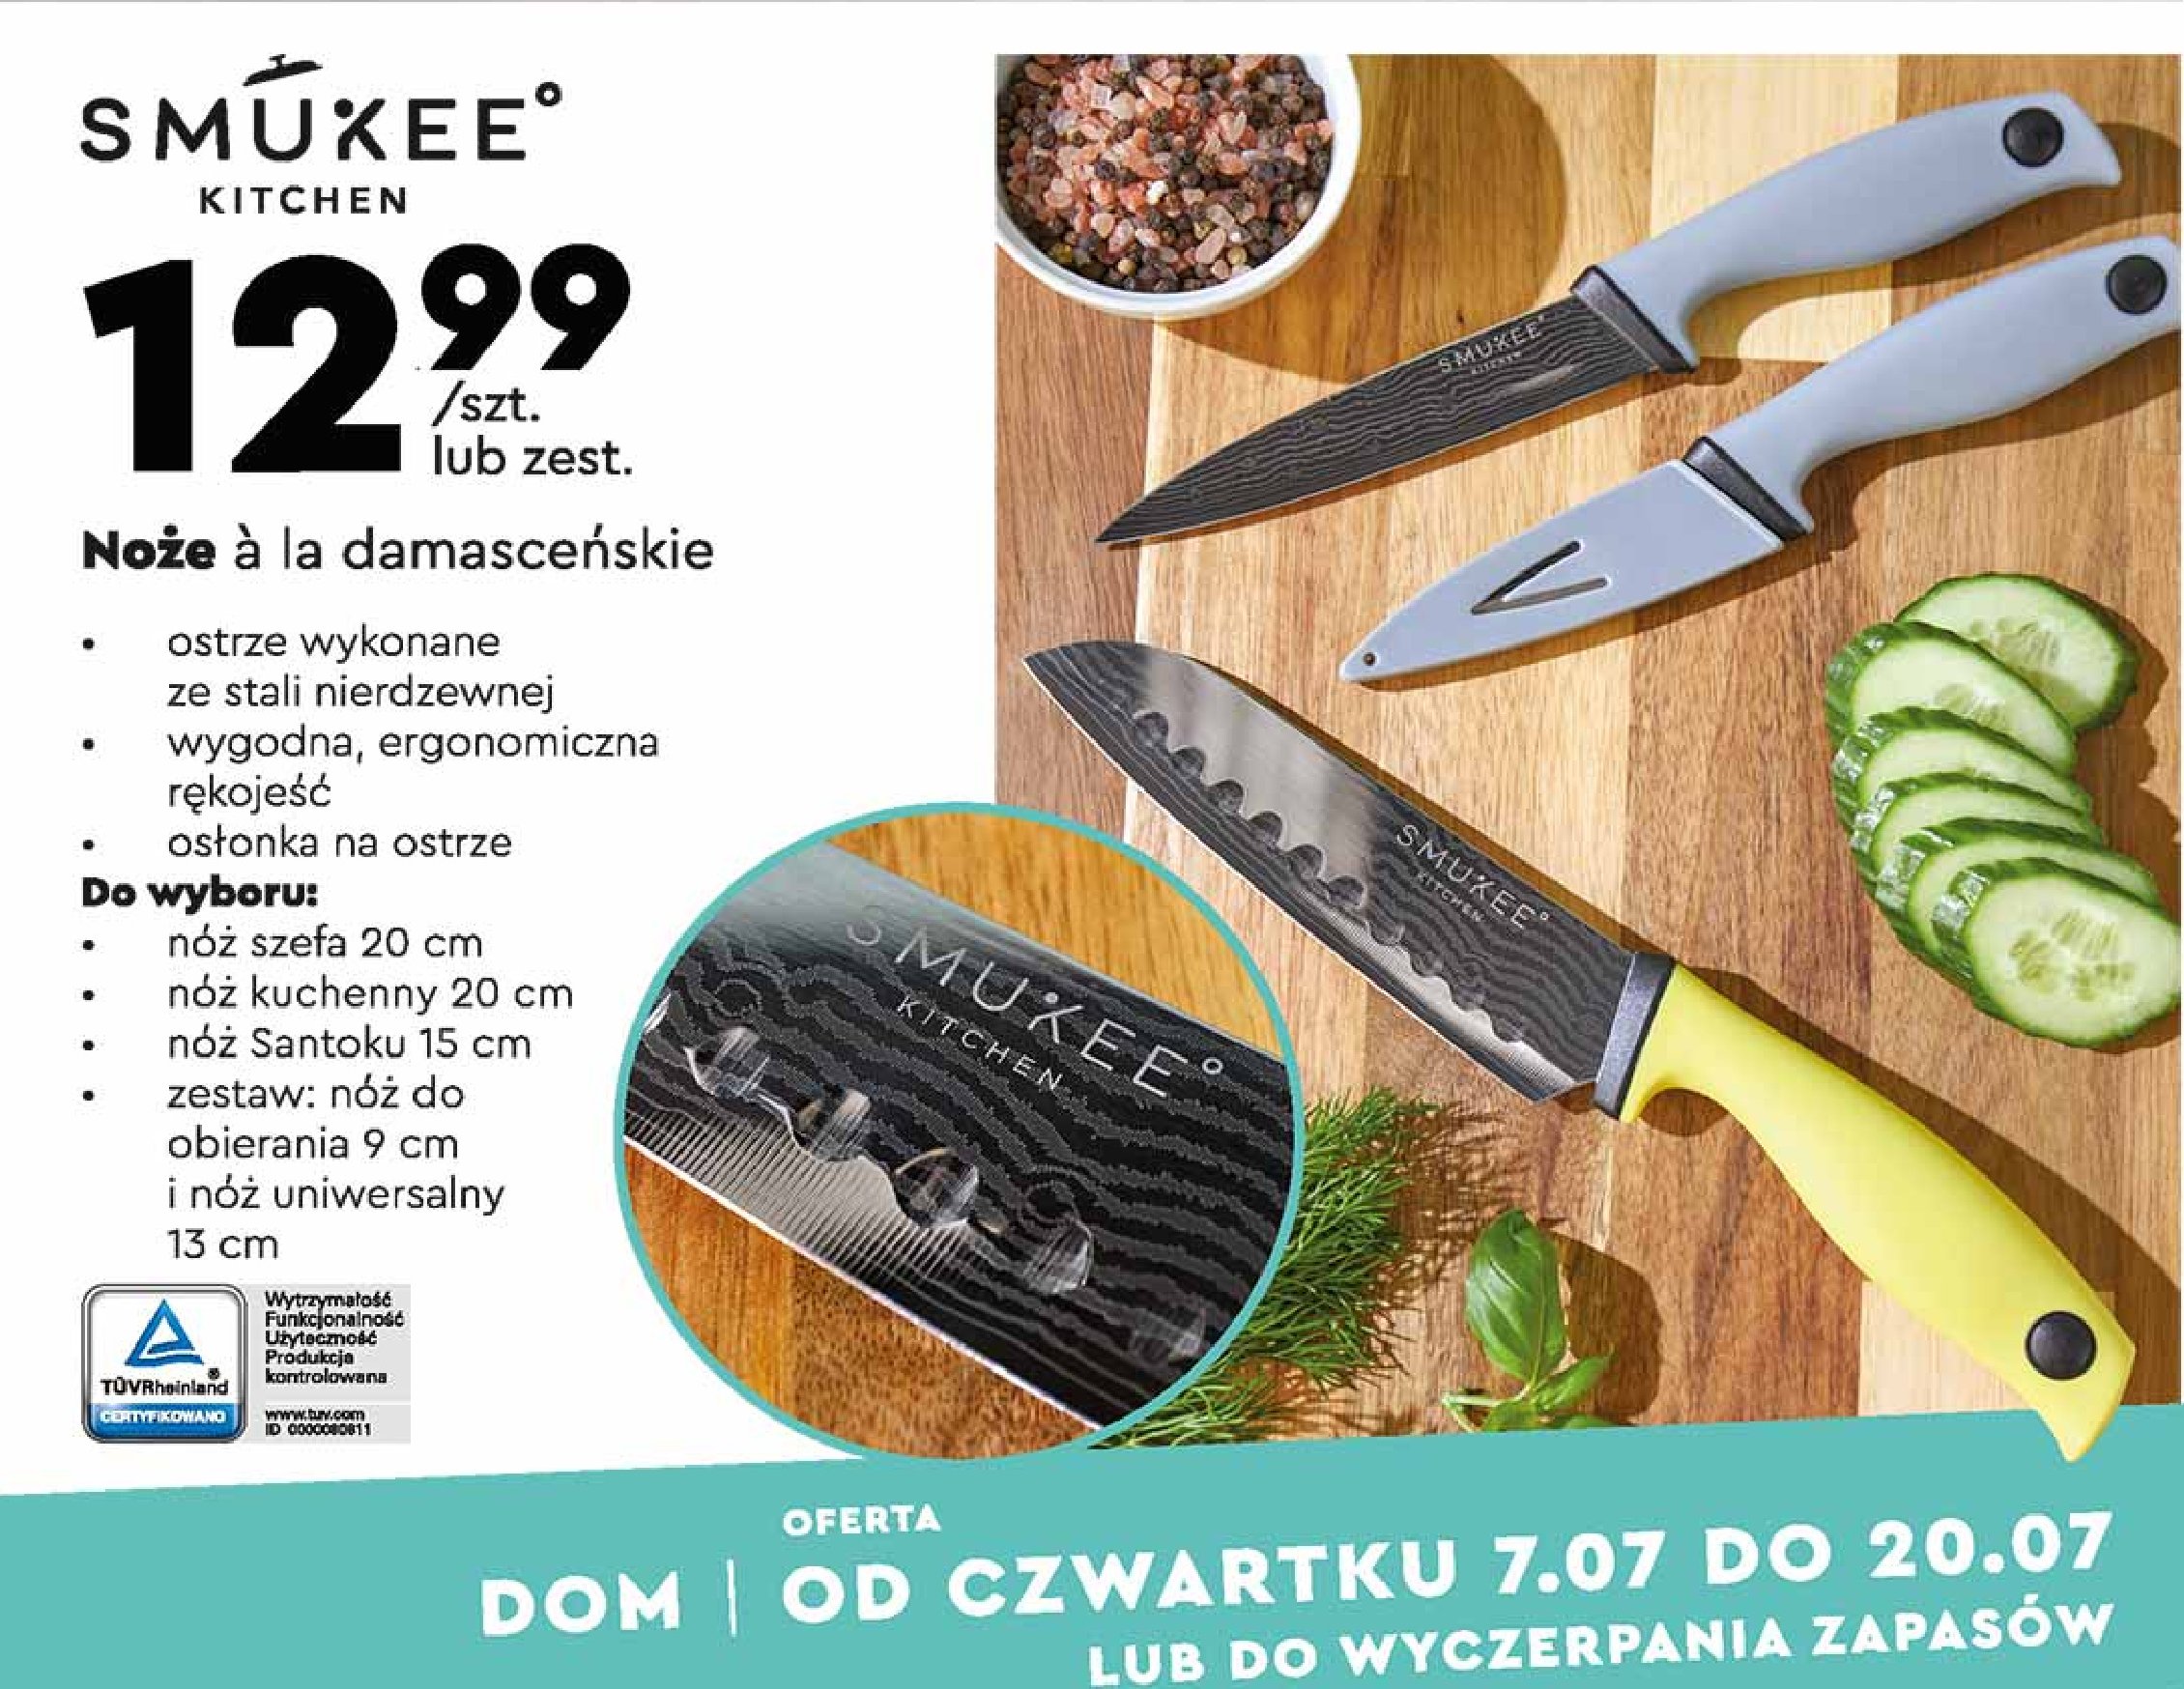 Nóż kuchenny ala damasceński 20 cm Smukee kitchen promocja